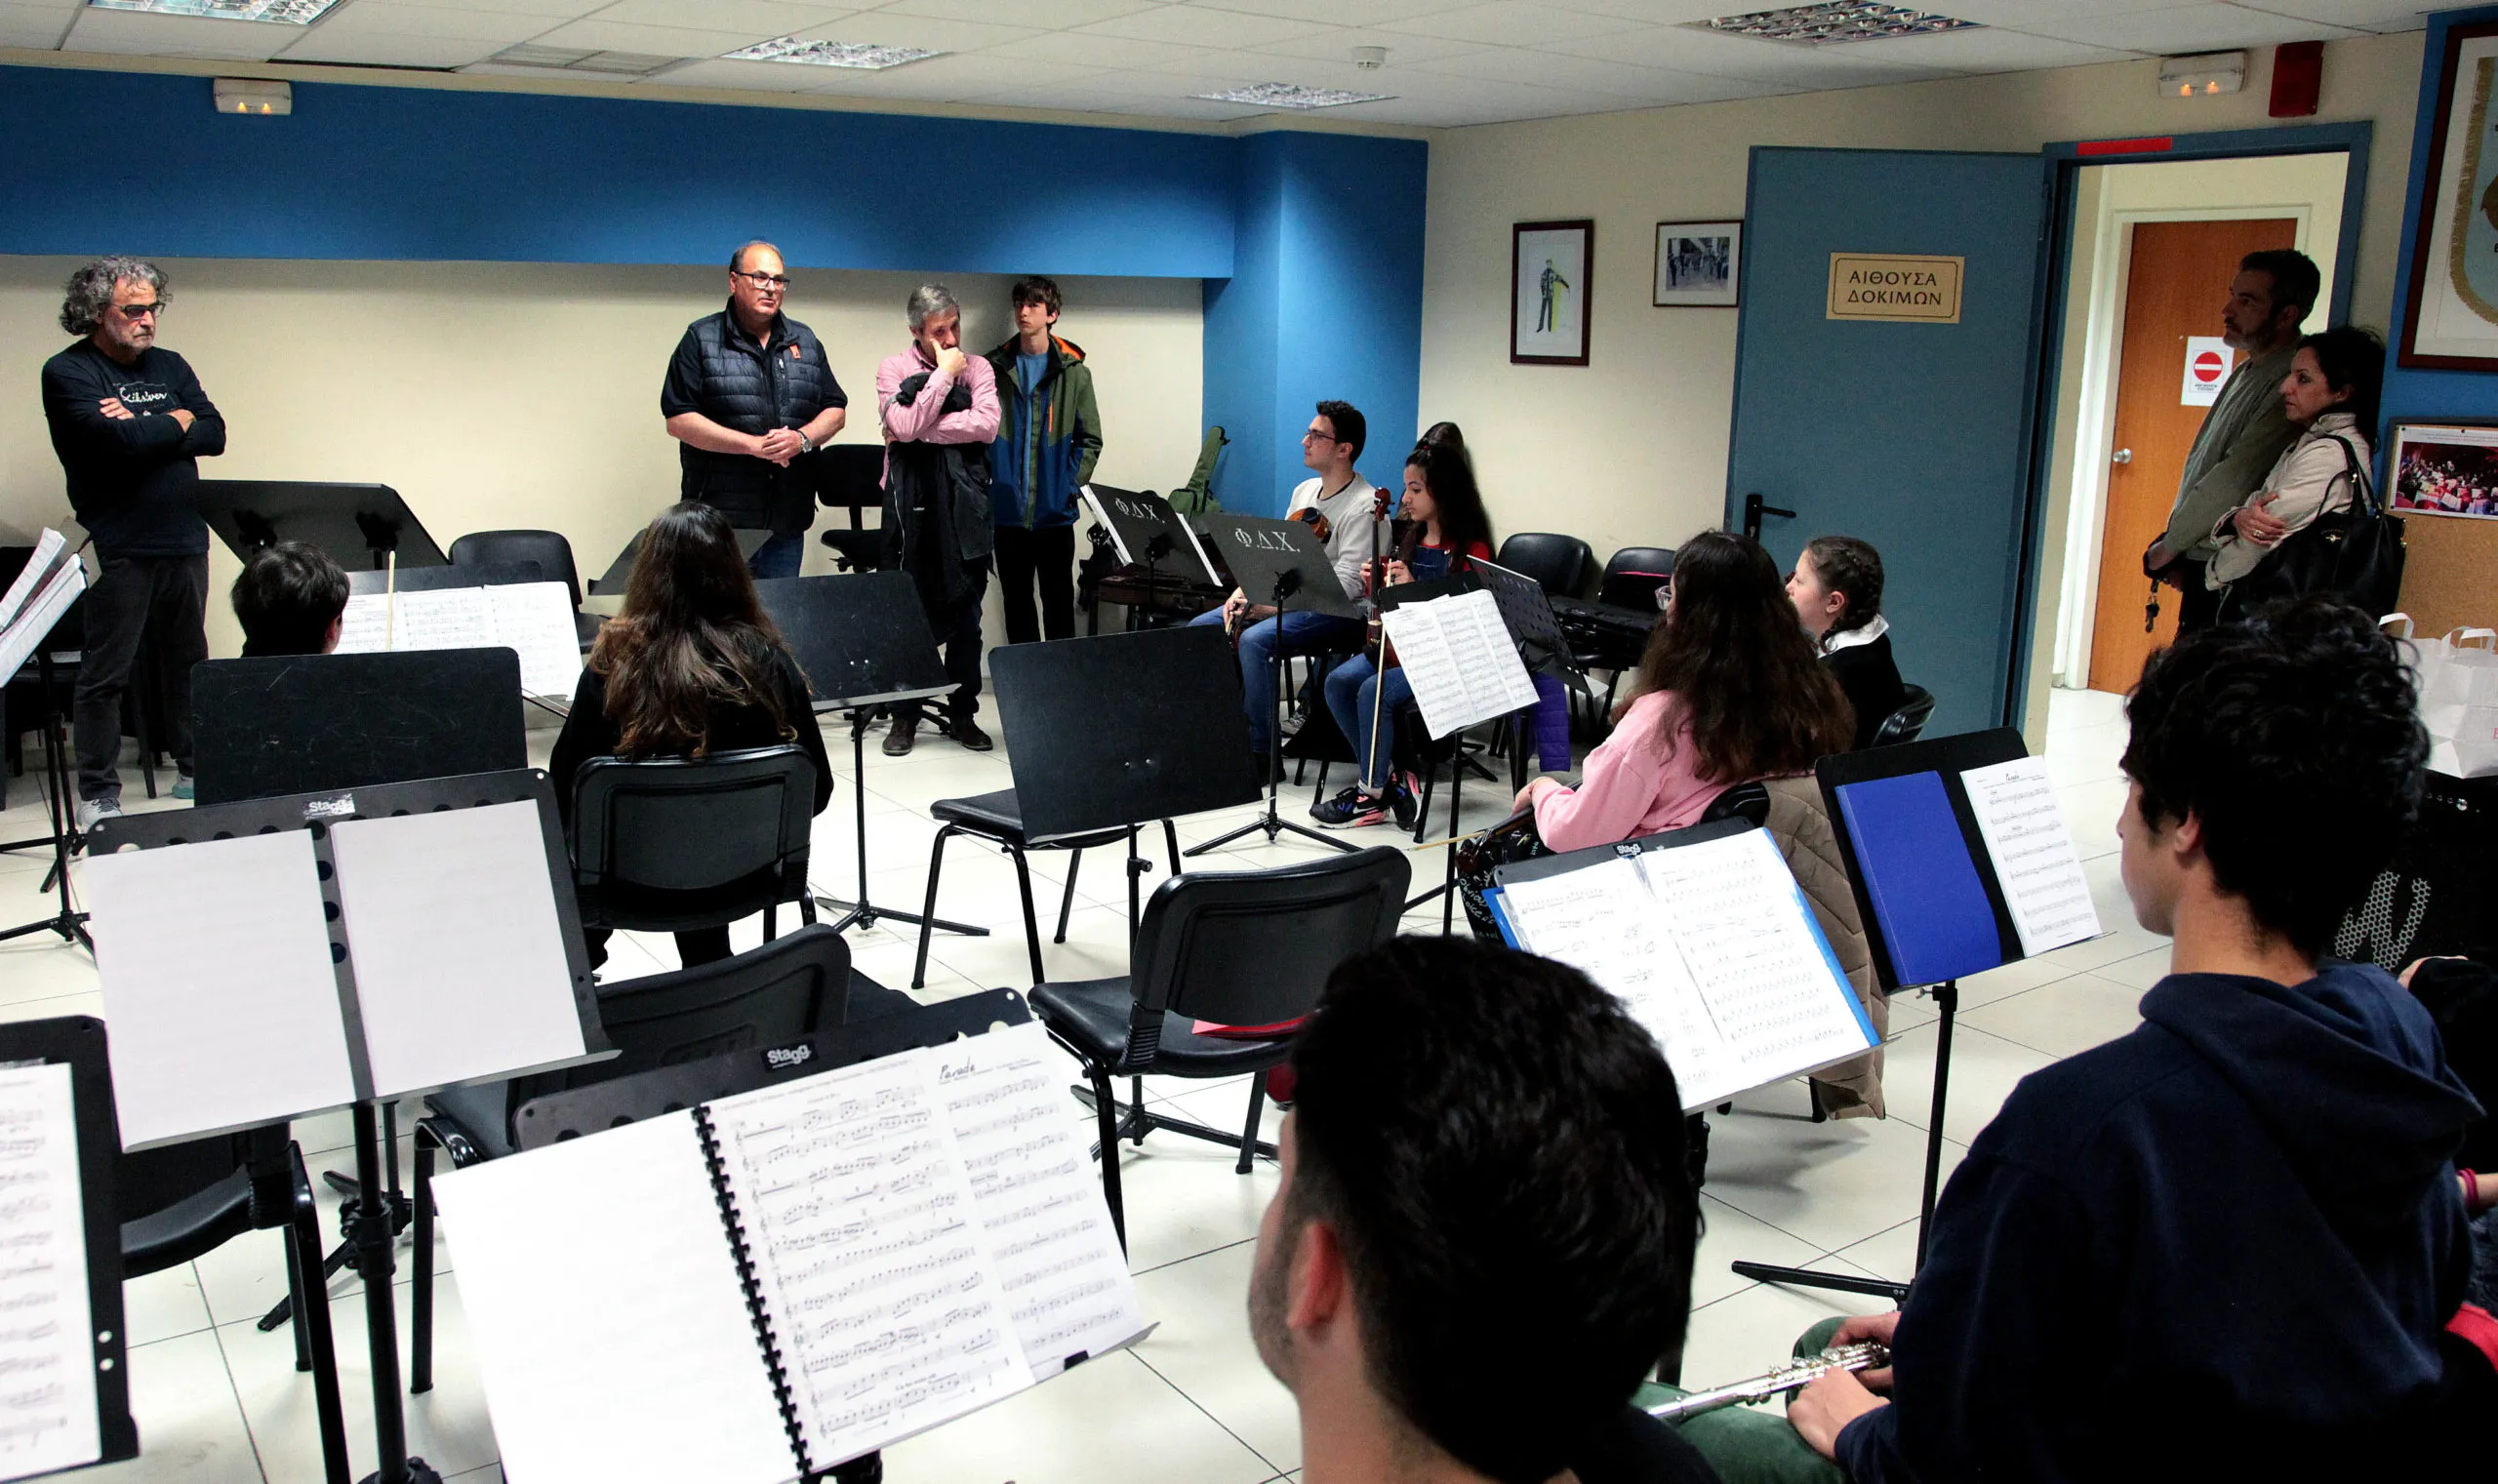 Δωρεά μουσικών οργάνων στη Συμφωνική Ορχήστρα Νέων του Δήμου Χαλανδρίου στη μνήμη του Νότη Μαυρουδή